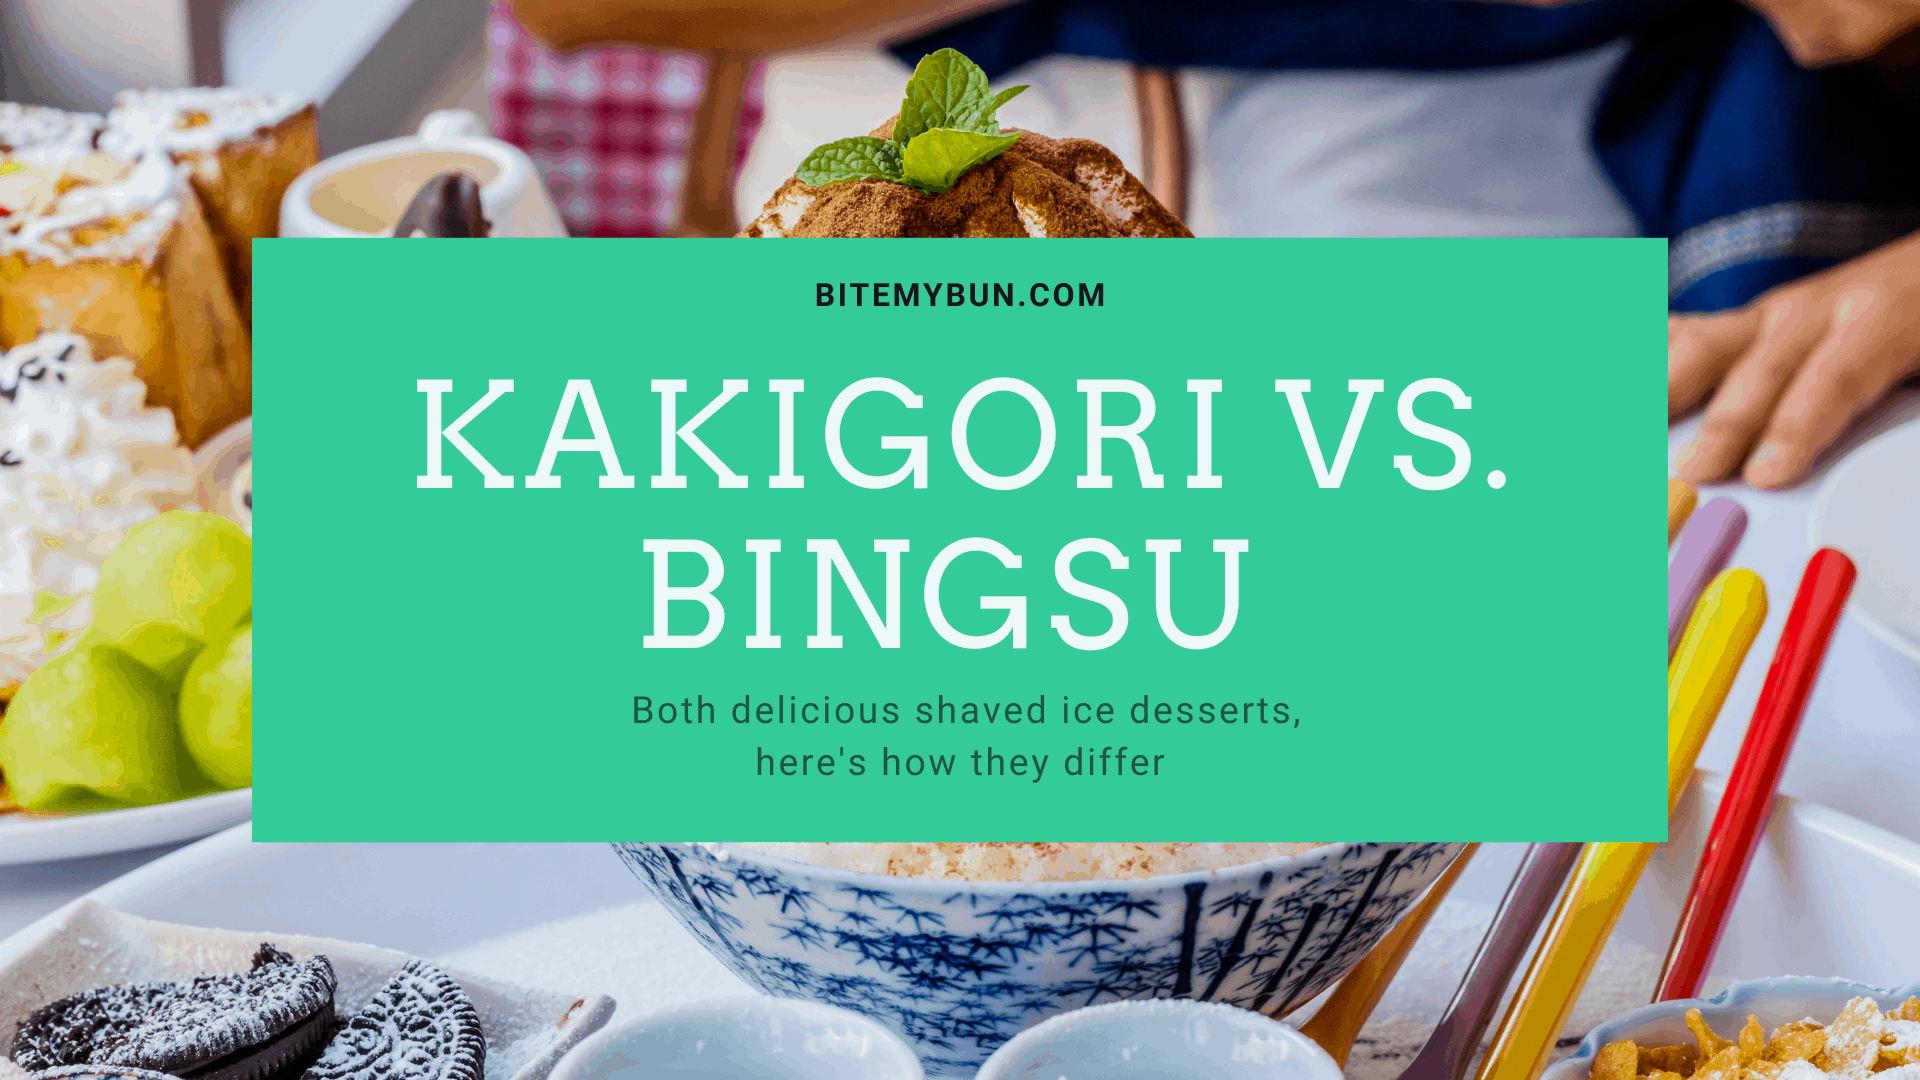 Kakigori contra bingsu | Ambos deliciosos postres de hielo raspado, así es como se diferencian